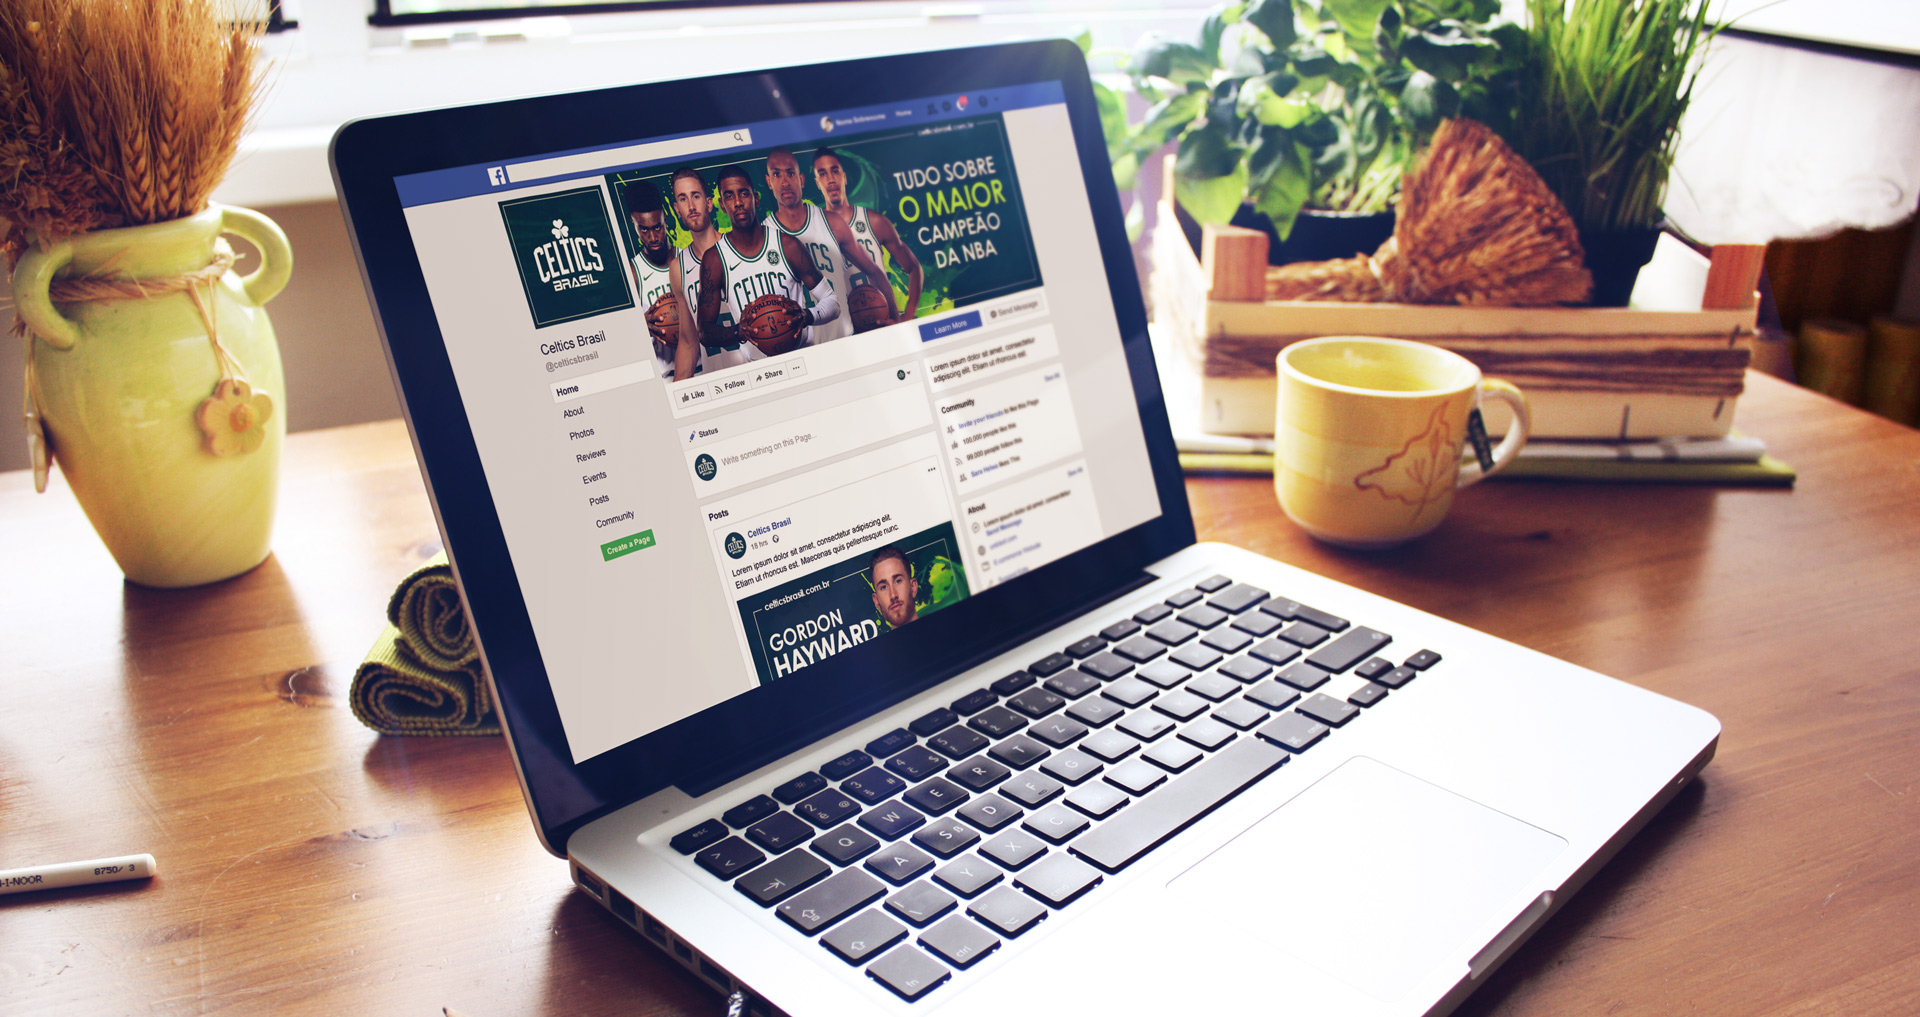 Celtics Brasil - Criação de conteúdo e personalização de redes sociais